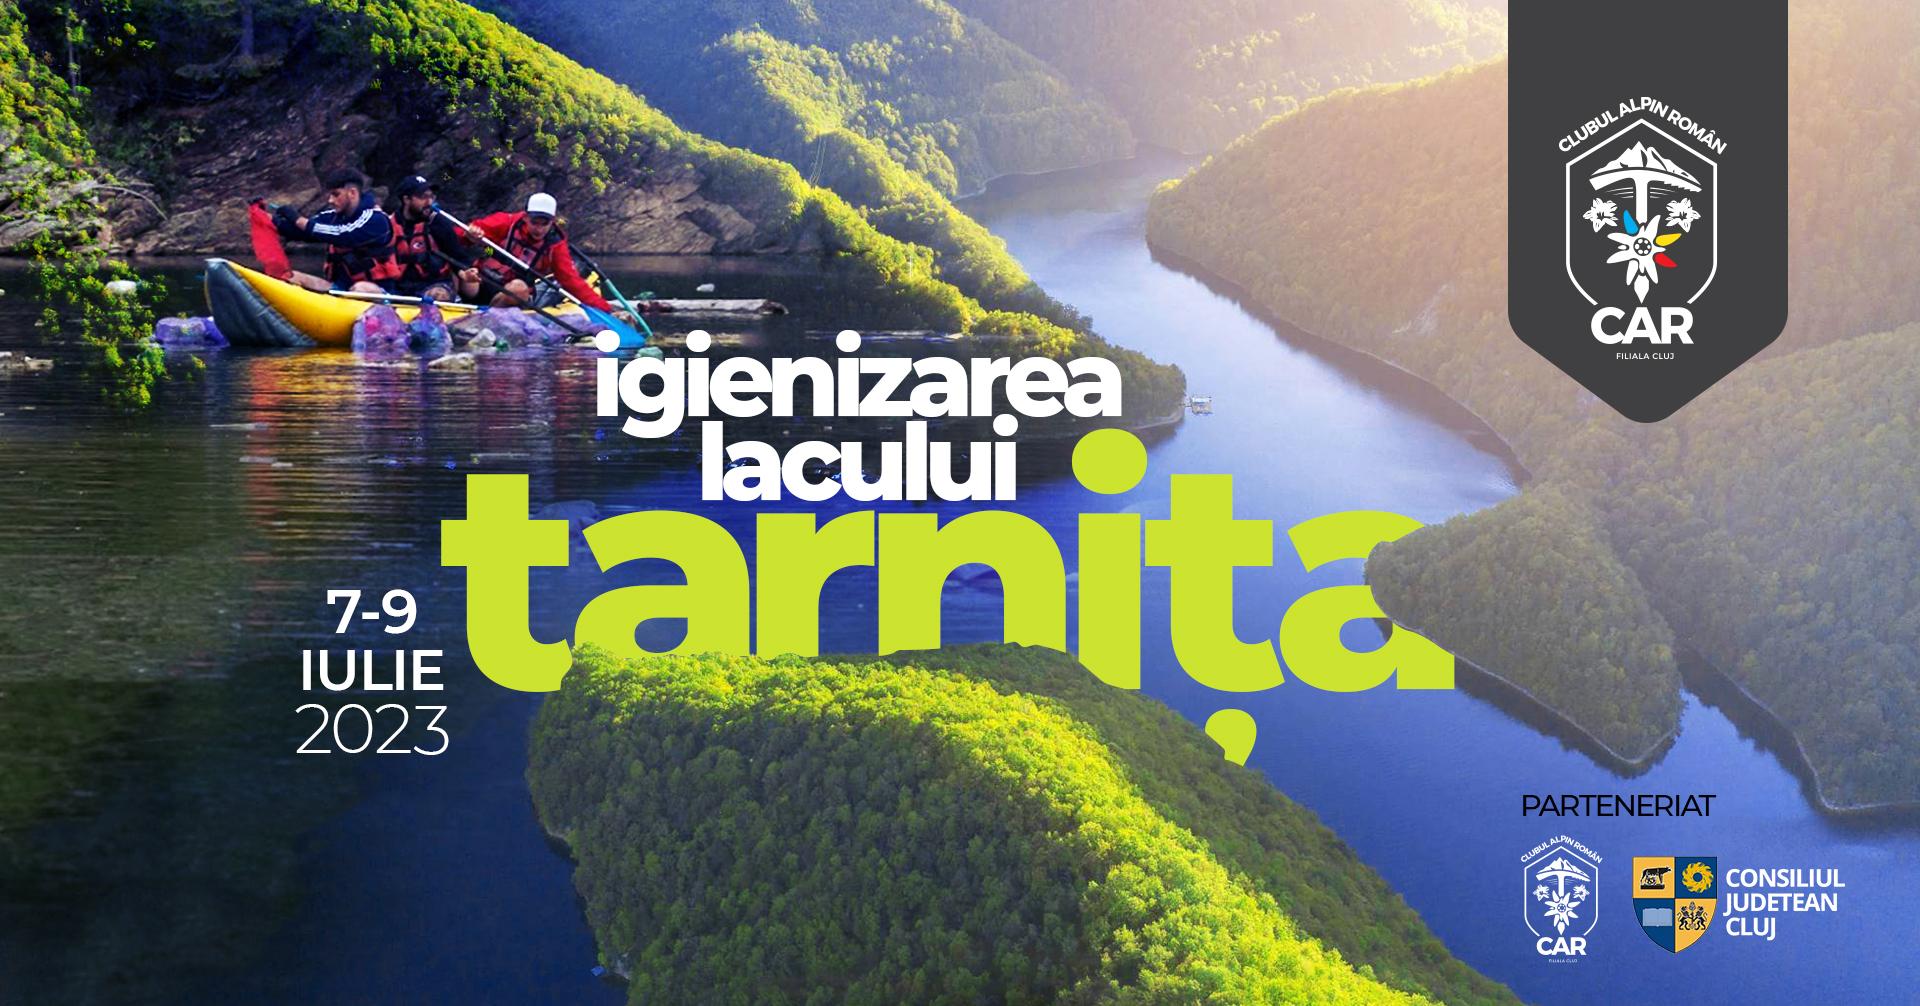 Acțiune de ecologizare a lacului Tarnița în weekend / Programul şi echipamentul necesar